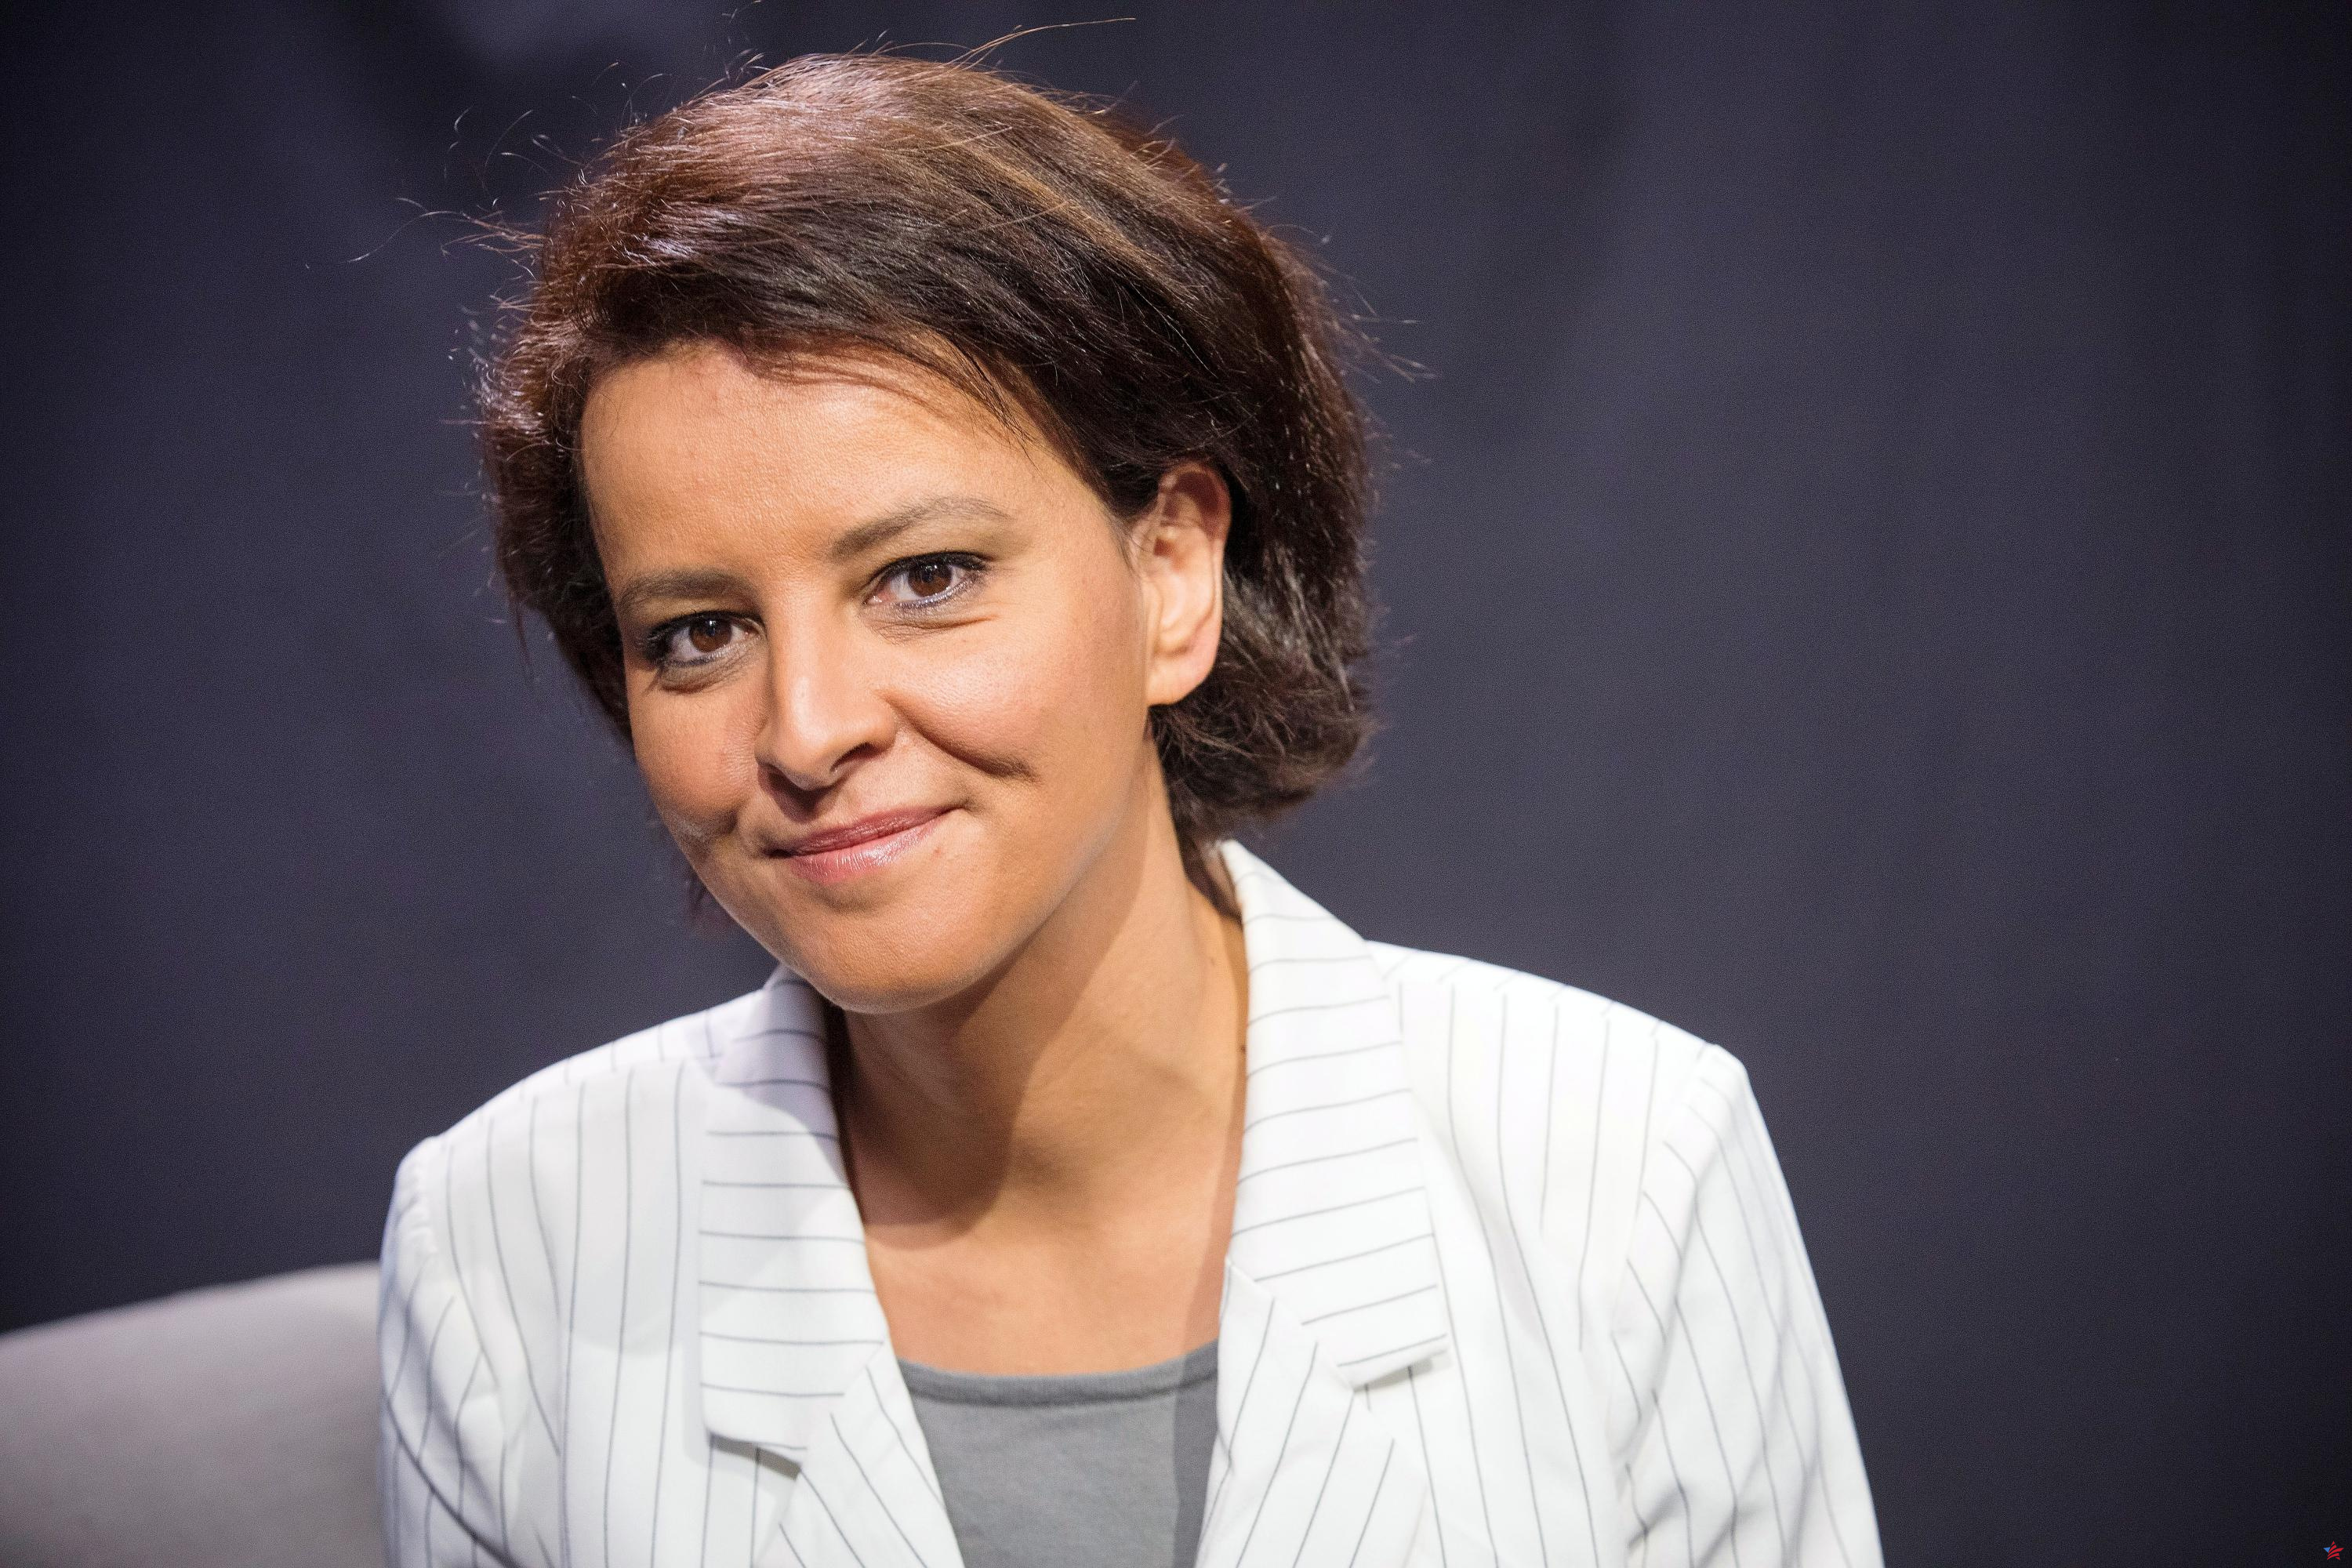 “Defendernos frente a la alienación”: burlada tras proponer “racionar Internet”, Najat Vallaud-Belkacem defiende su columna en Le Figaro